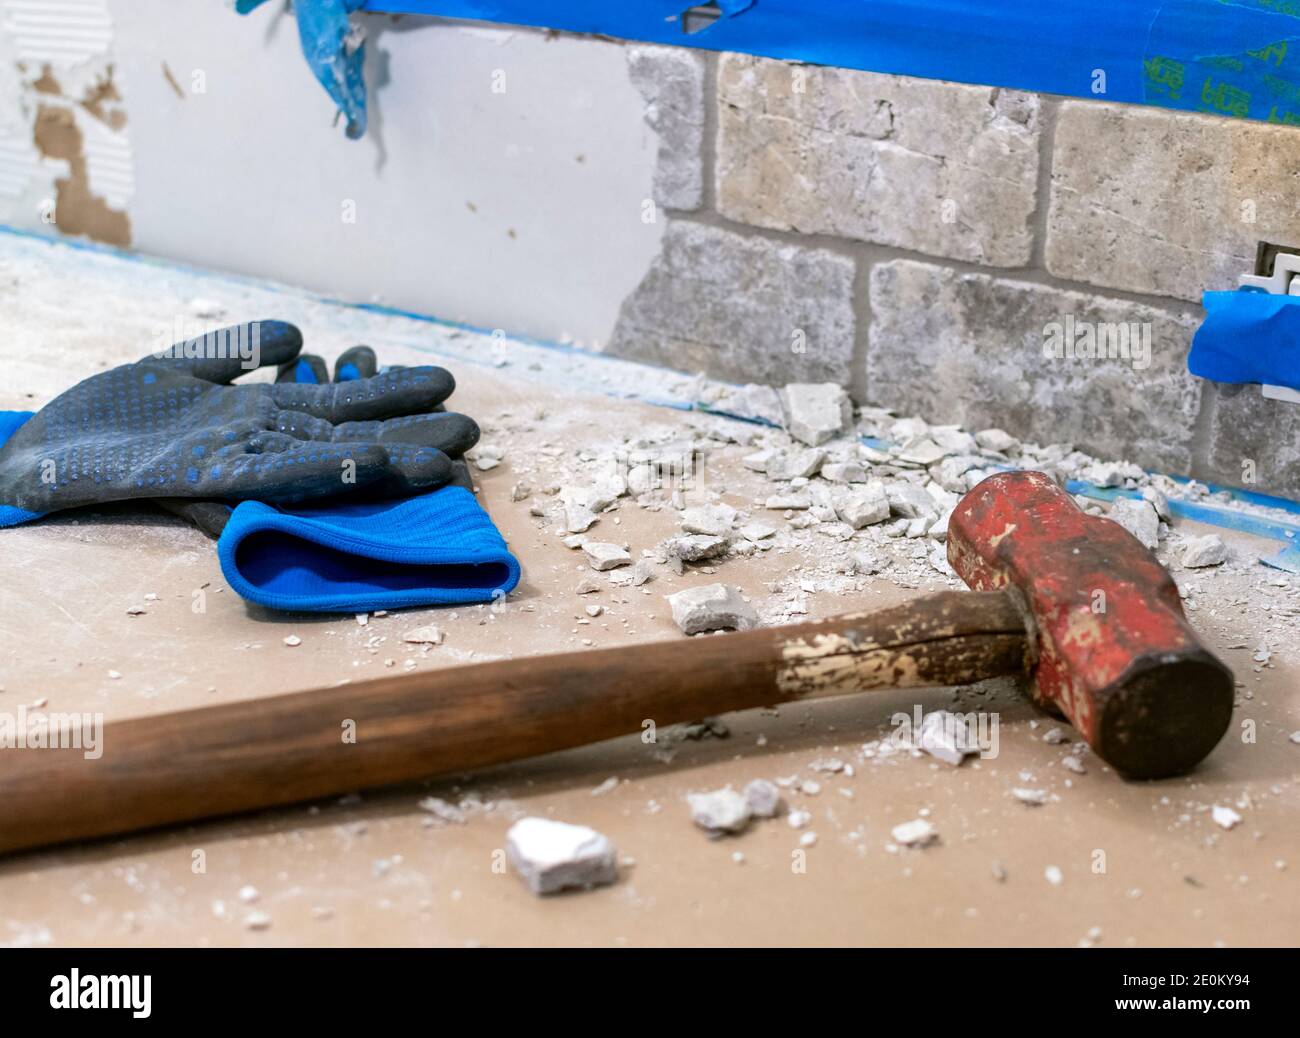 Une paire de gants usagés et un marteau en traîneau sont placés à côté d'une pile de gravats lors de la démolition d'un dosseret. Banque D'Images